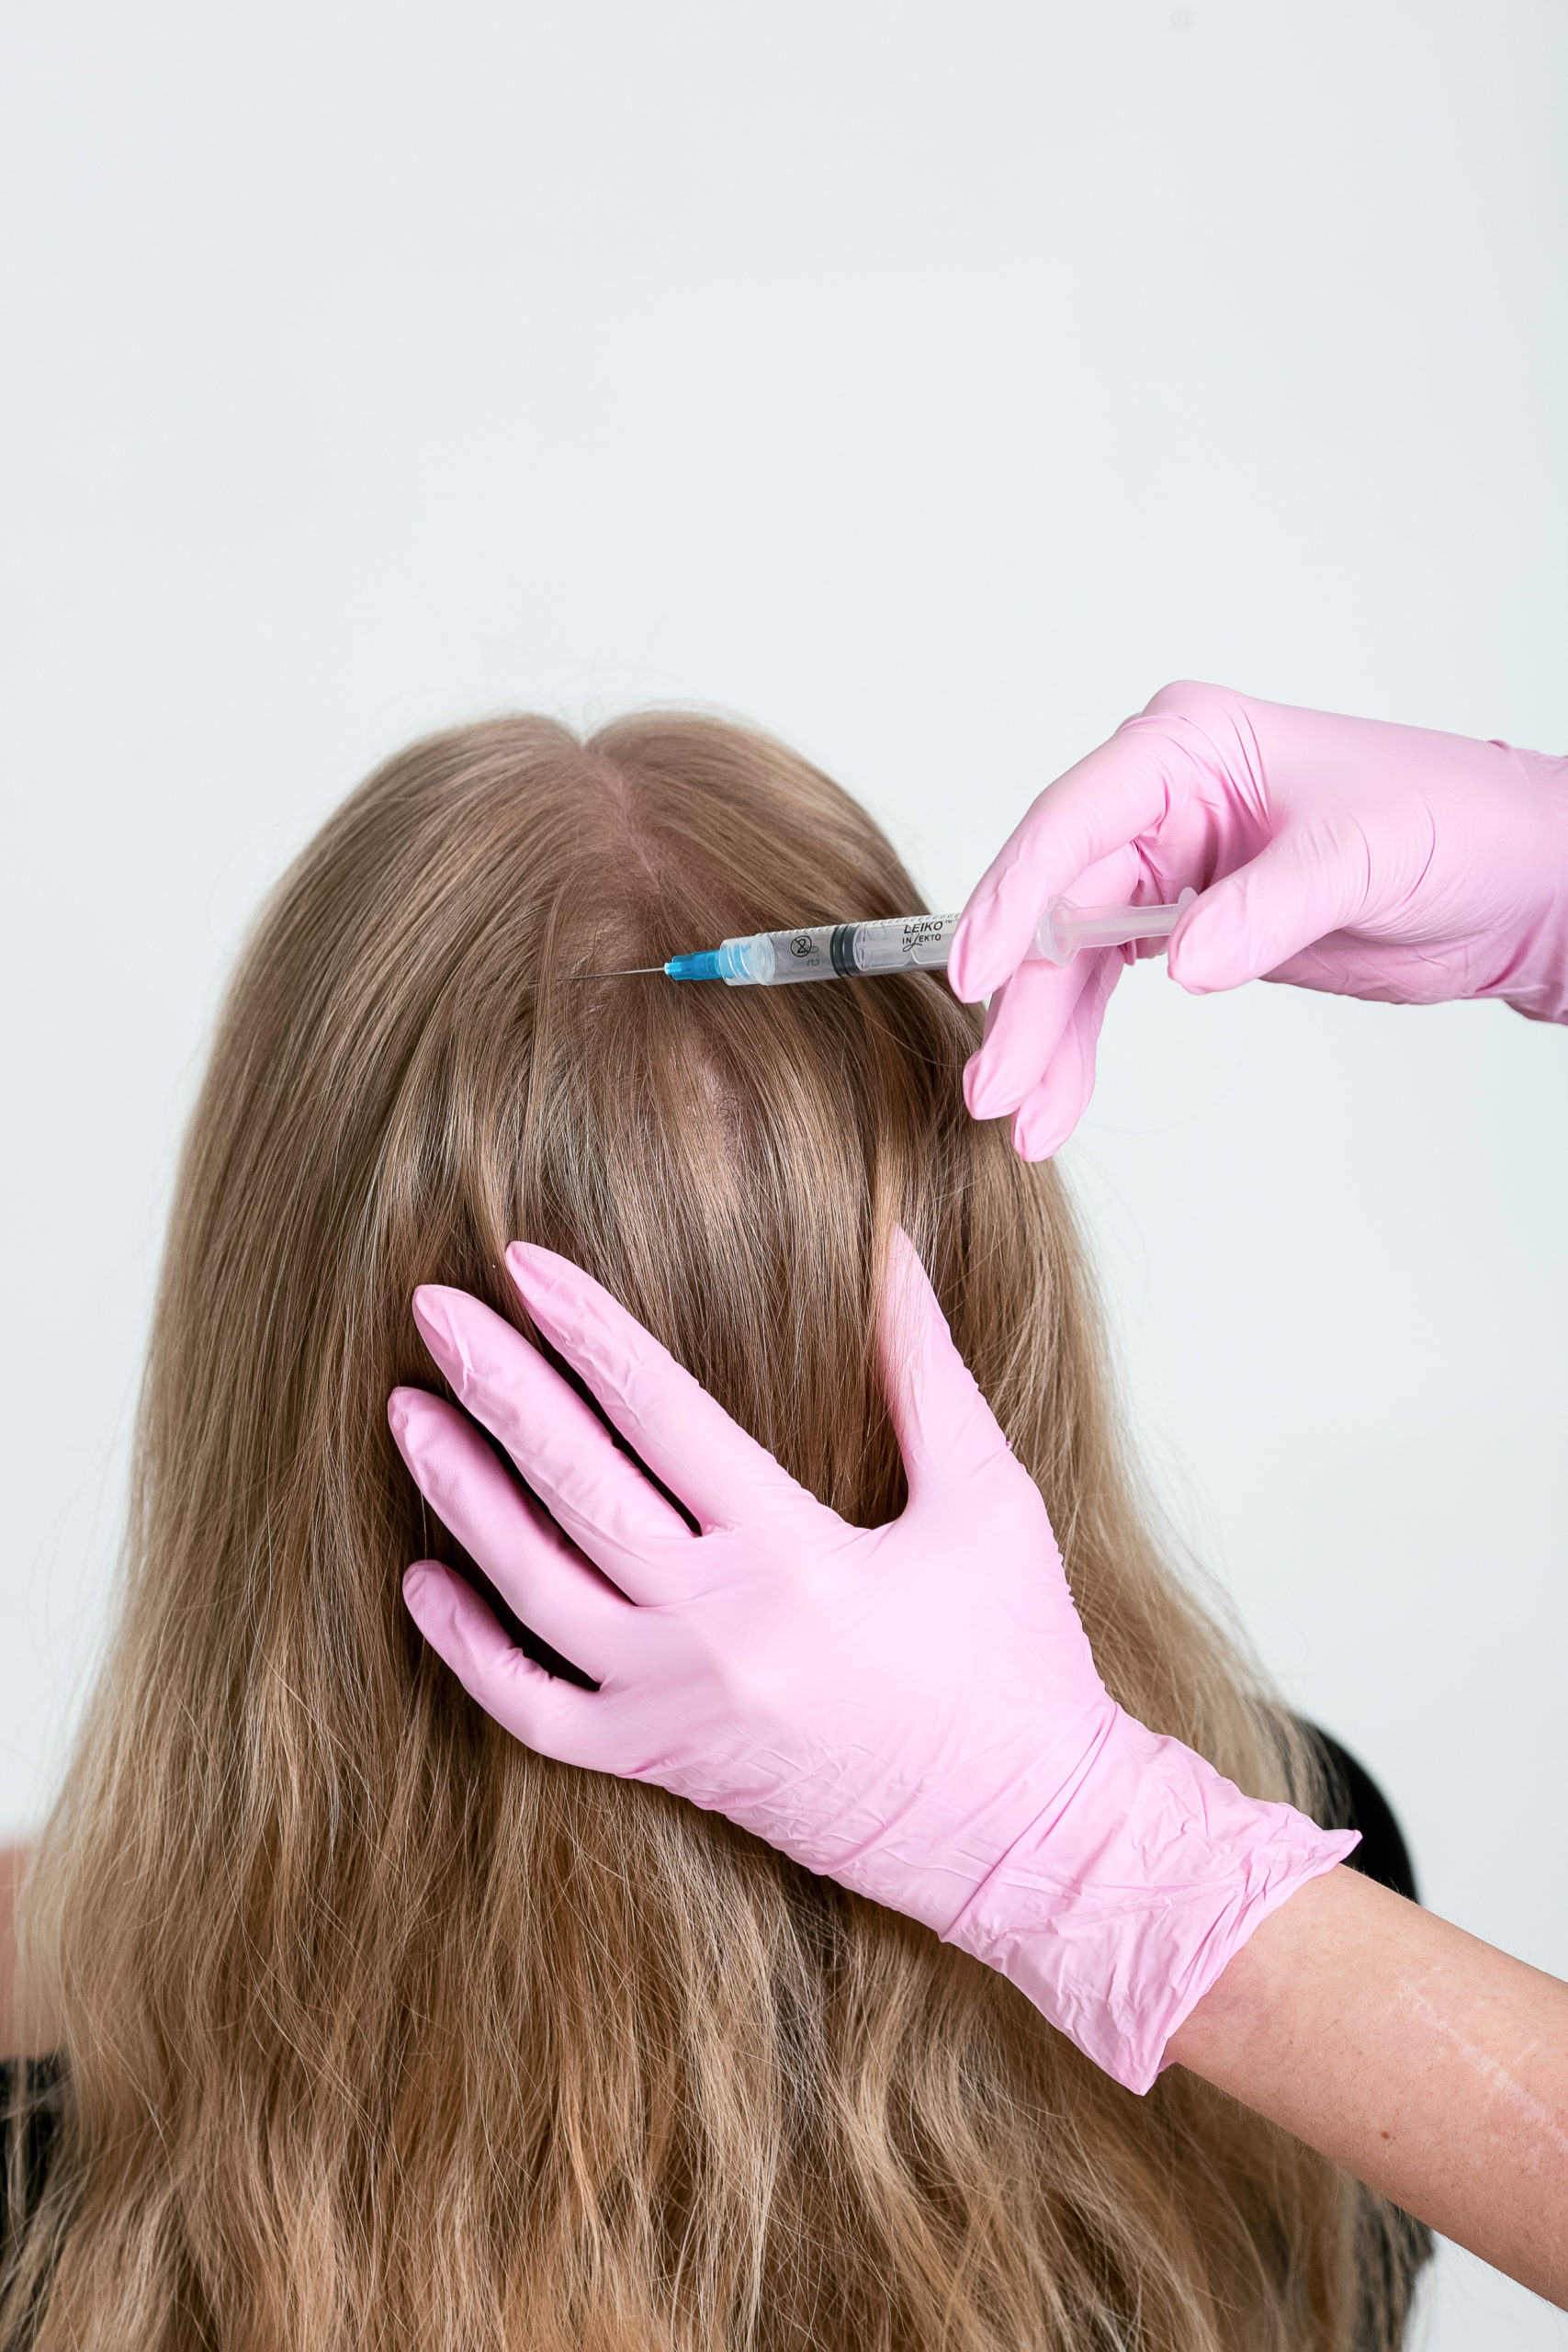 инъекционное лечение волос